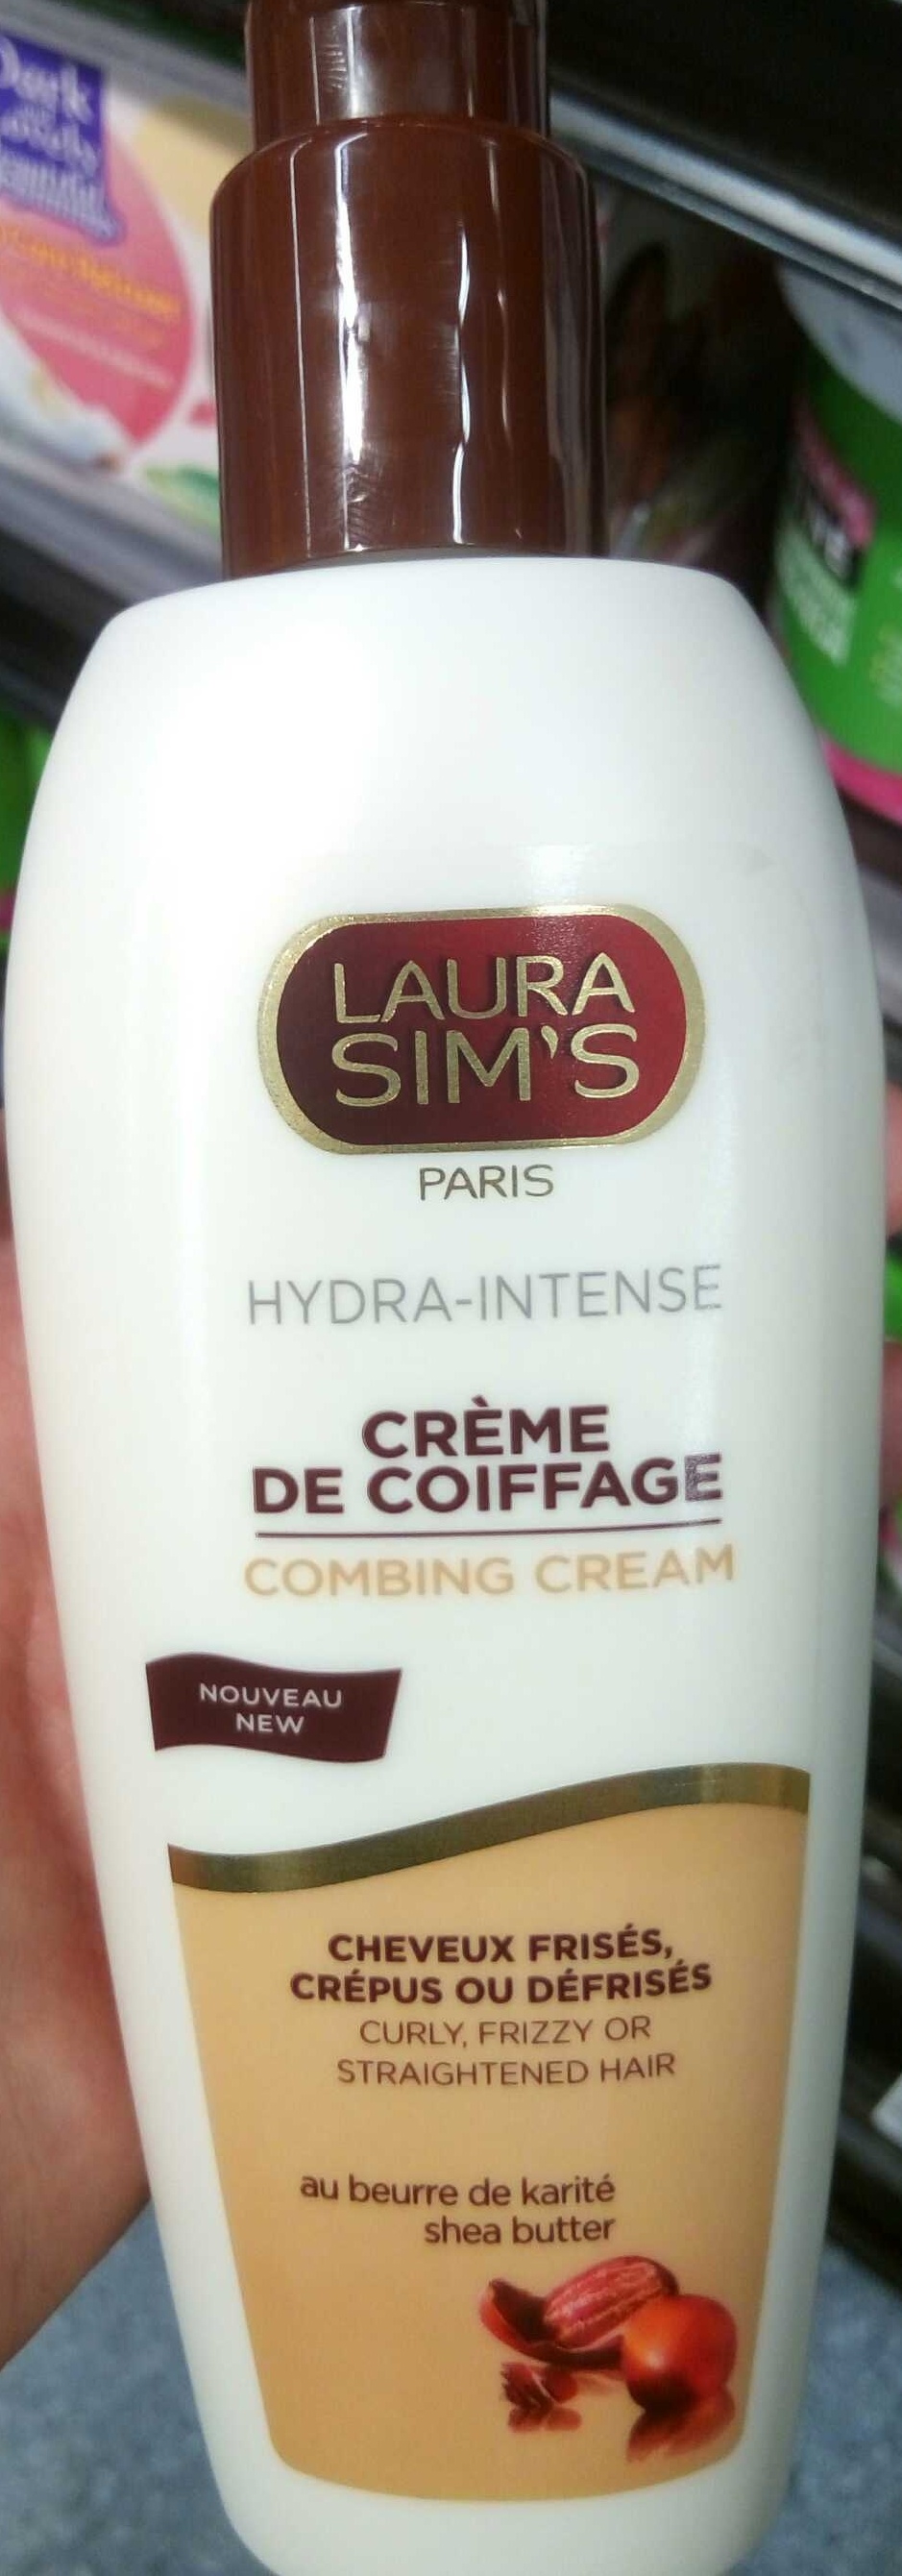 Hydra-Intense Crème de coiffage - Product - fr